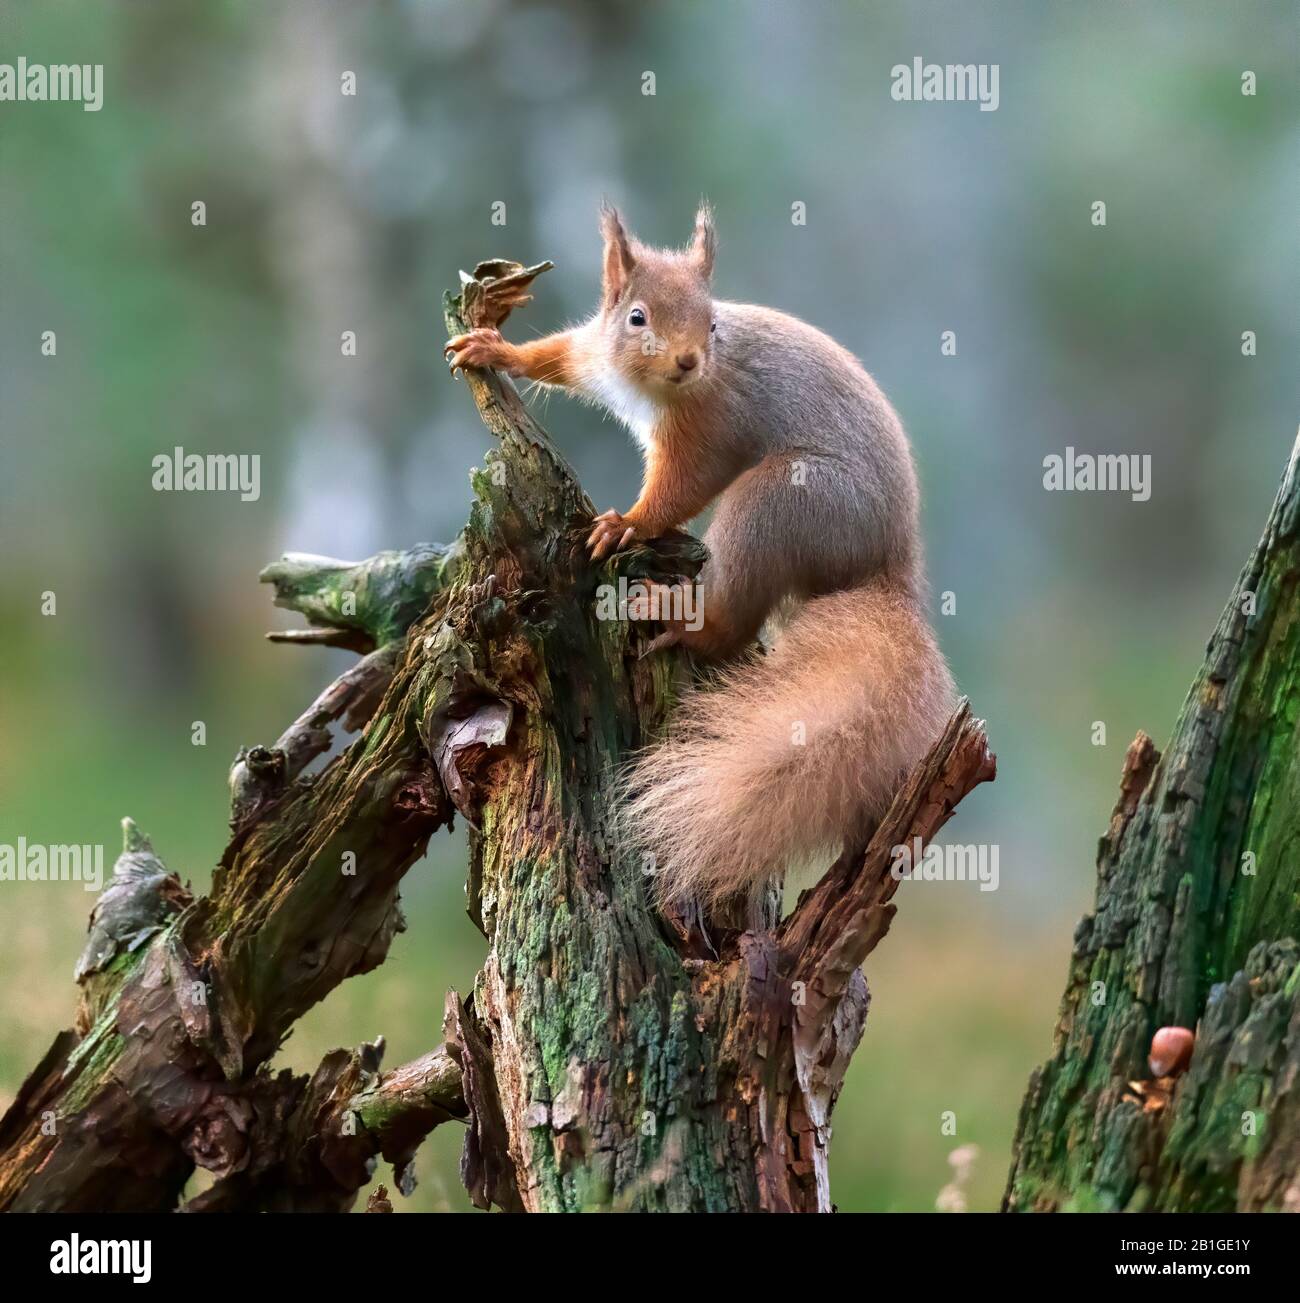 Red squirrel, Sciurus vulgaris Stock Photo